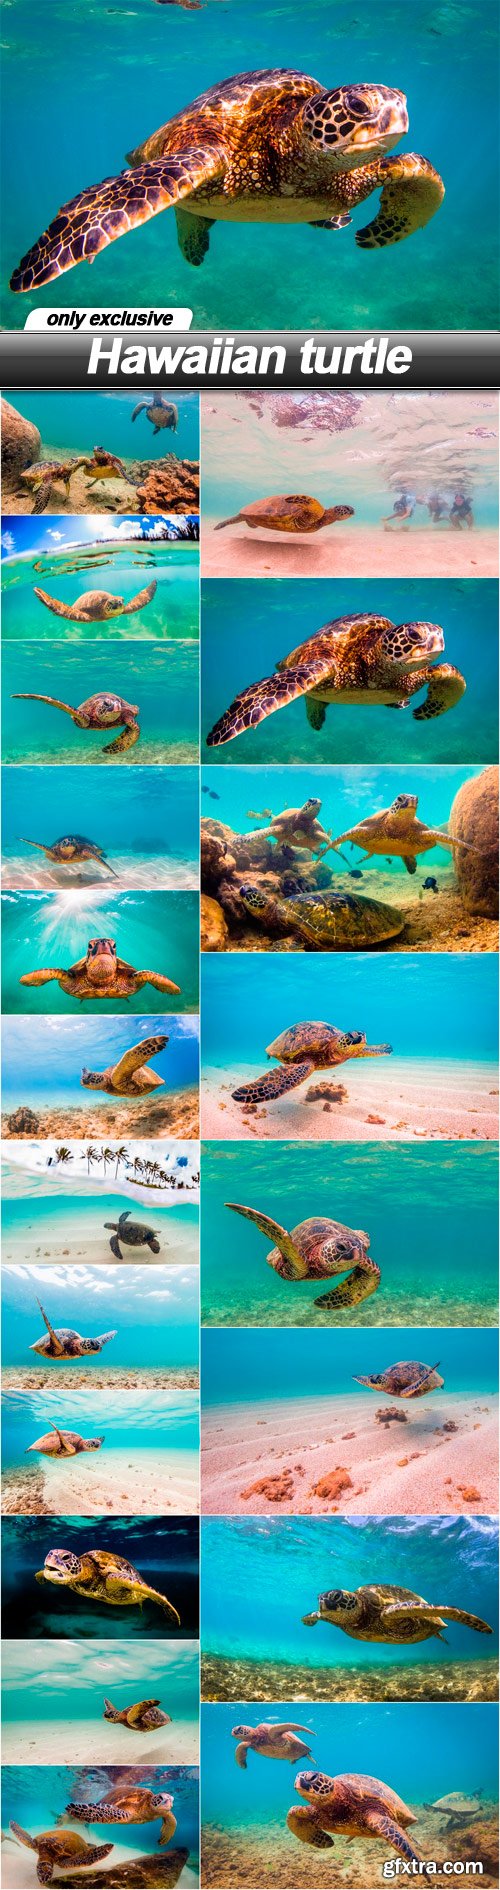 Hawaiian turtle - 20 UHQ JPEG